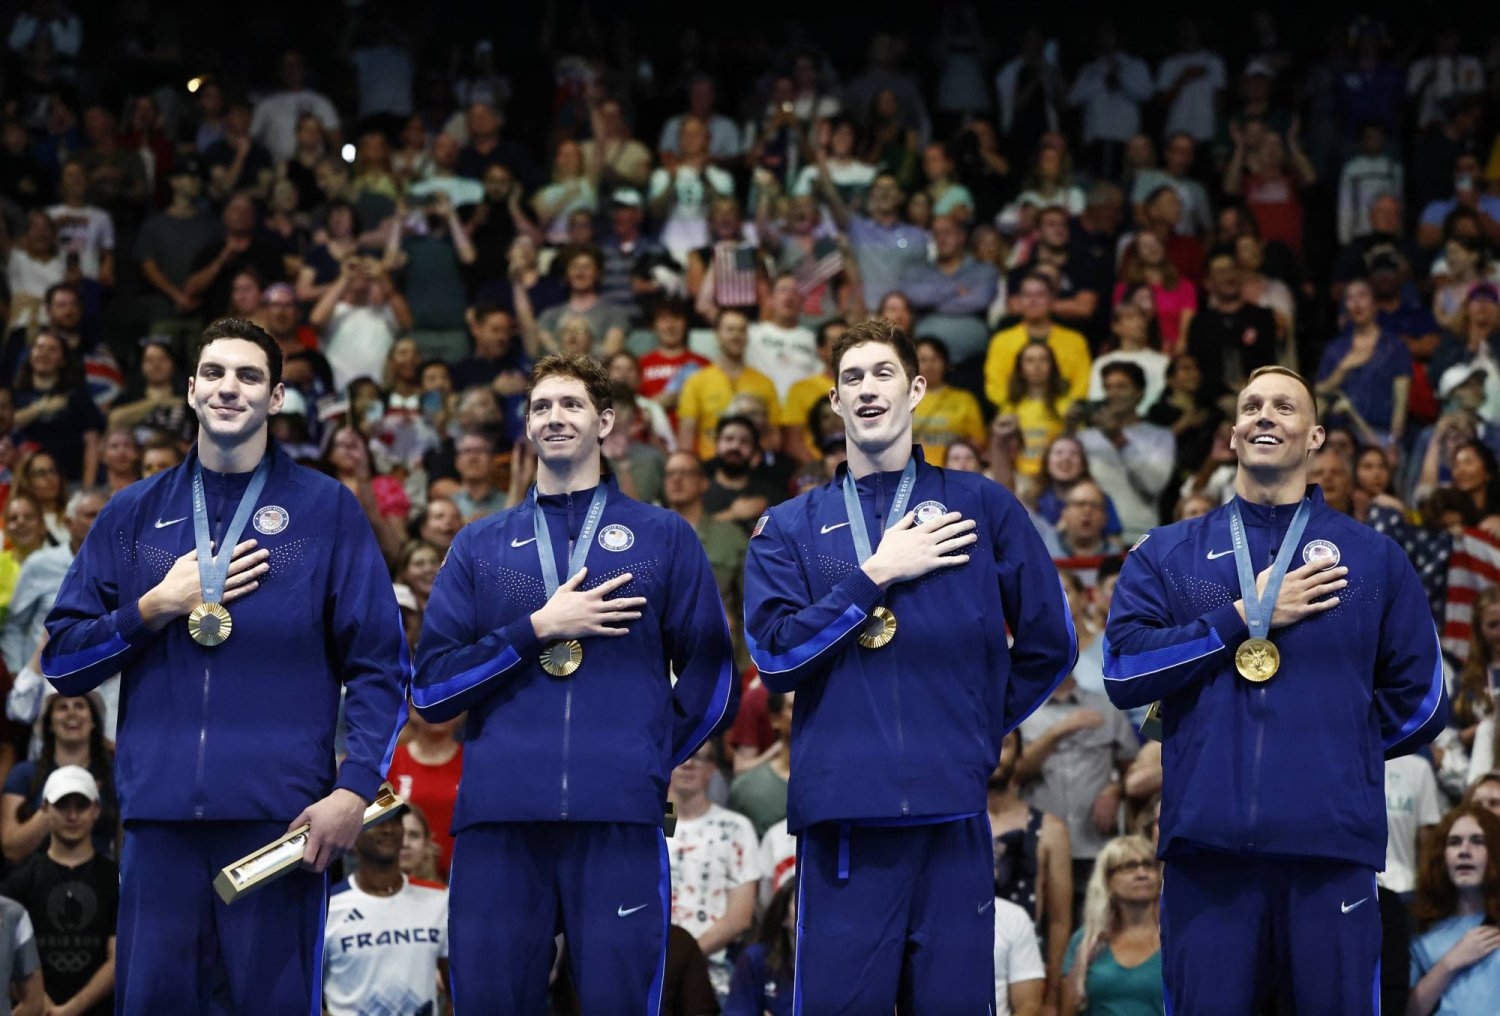 أولمبياد باريس: أميركا تحصد ذهبية تتابع السباحة للرجال